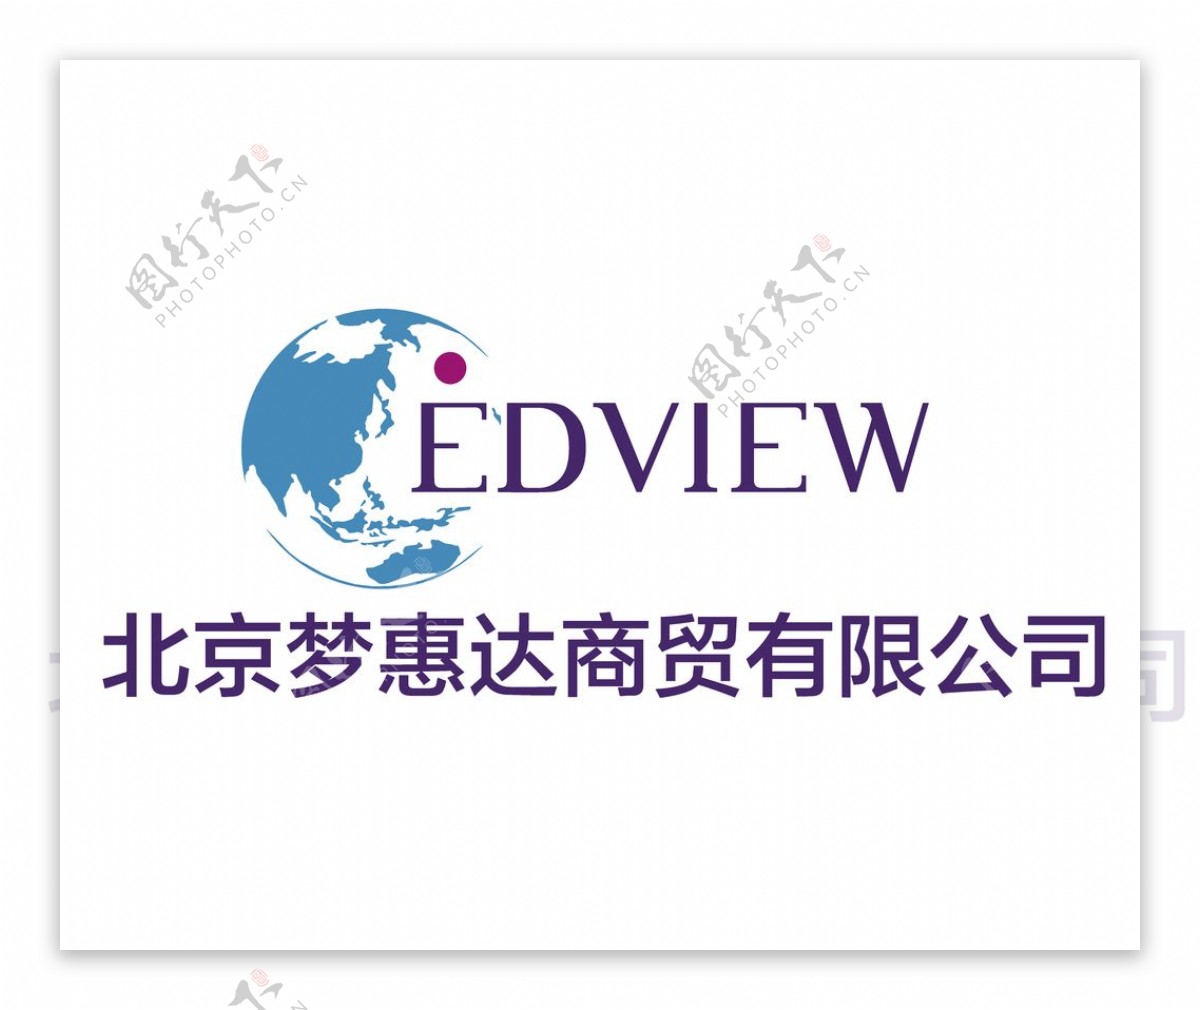 北京梦惠达商贸有限公司logo